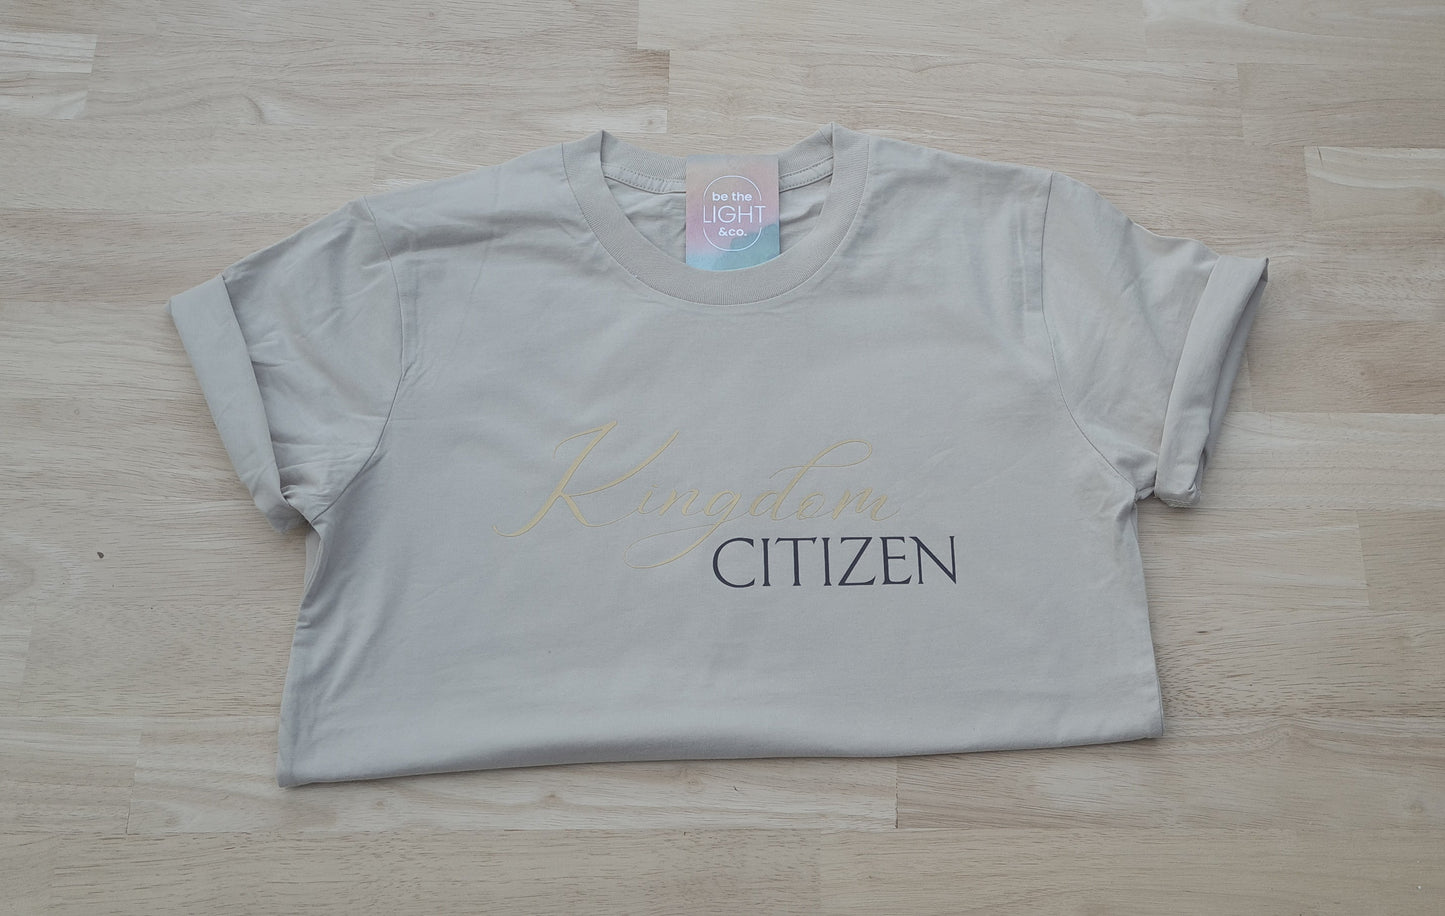 Kingdom Citizen - Sand Coloured Shirt